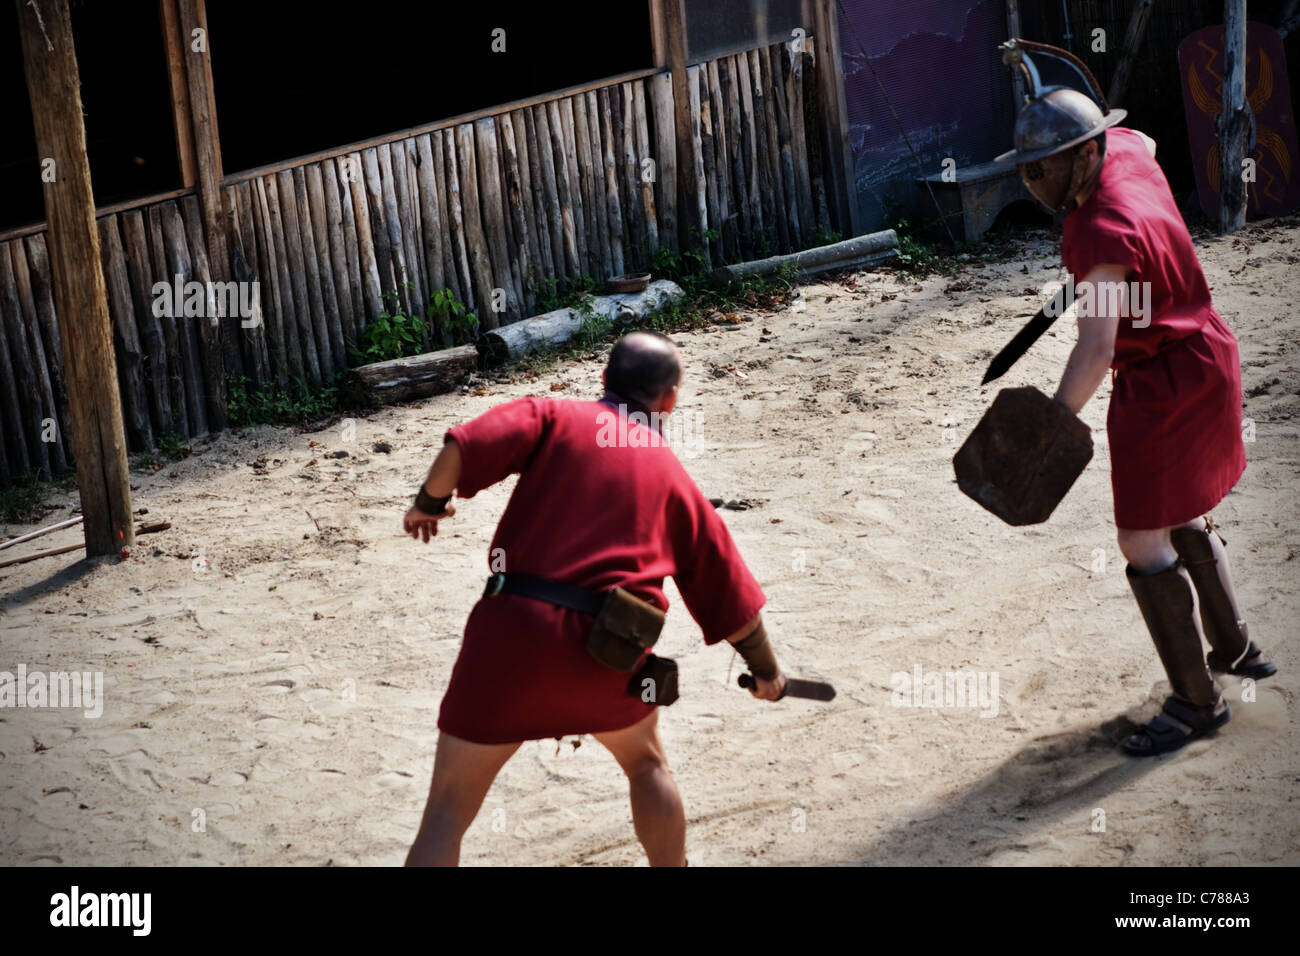 Gladiatoren in der Ausbildung tragen lila Tuniken, Sandalen und Helme, die genau die gleichen Gewichts- und Maßangaben sind. Stockfoto